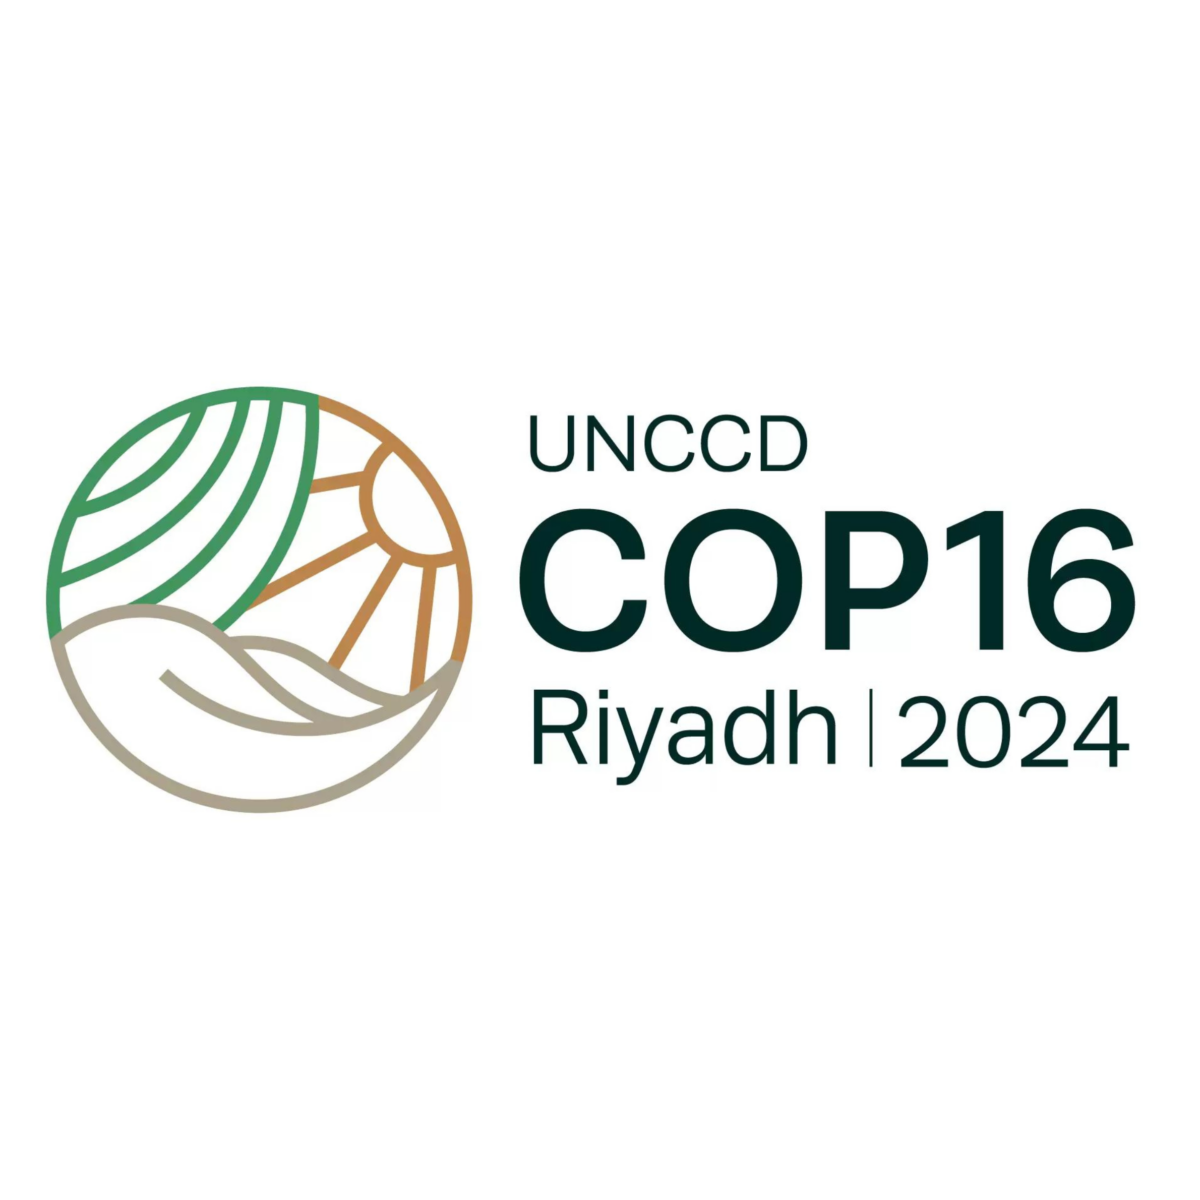 CNULD COP16 Riyadh